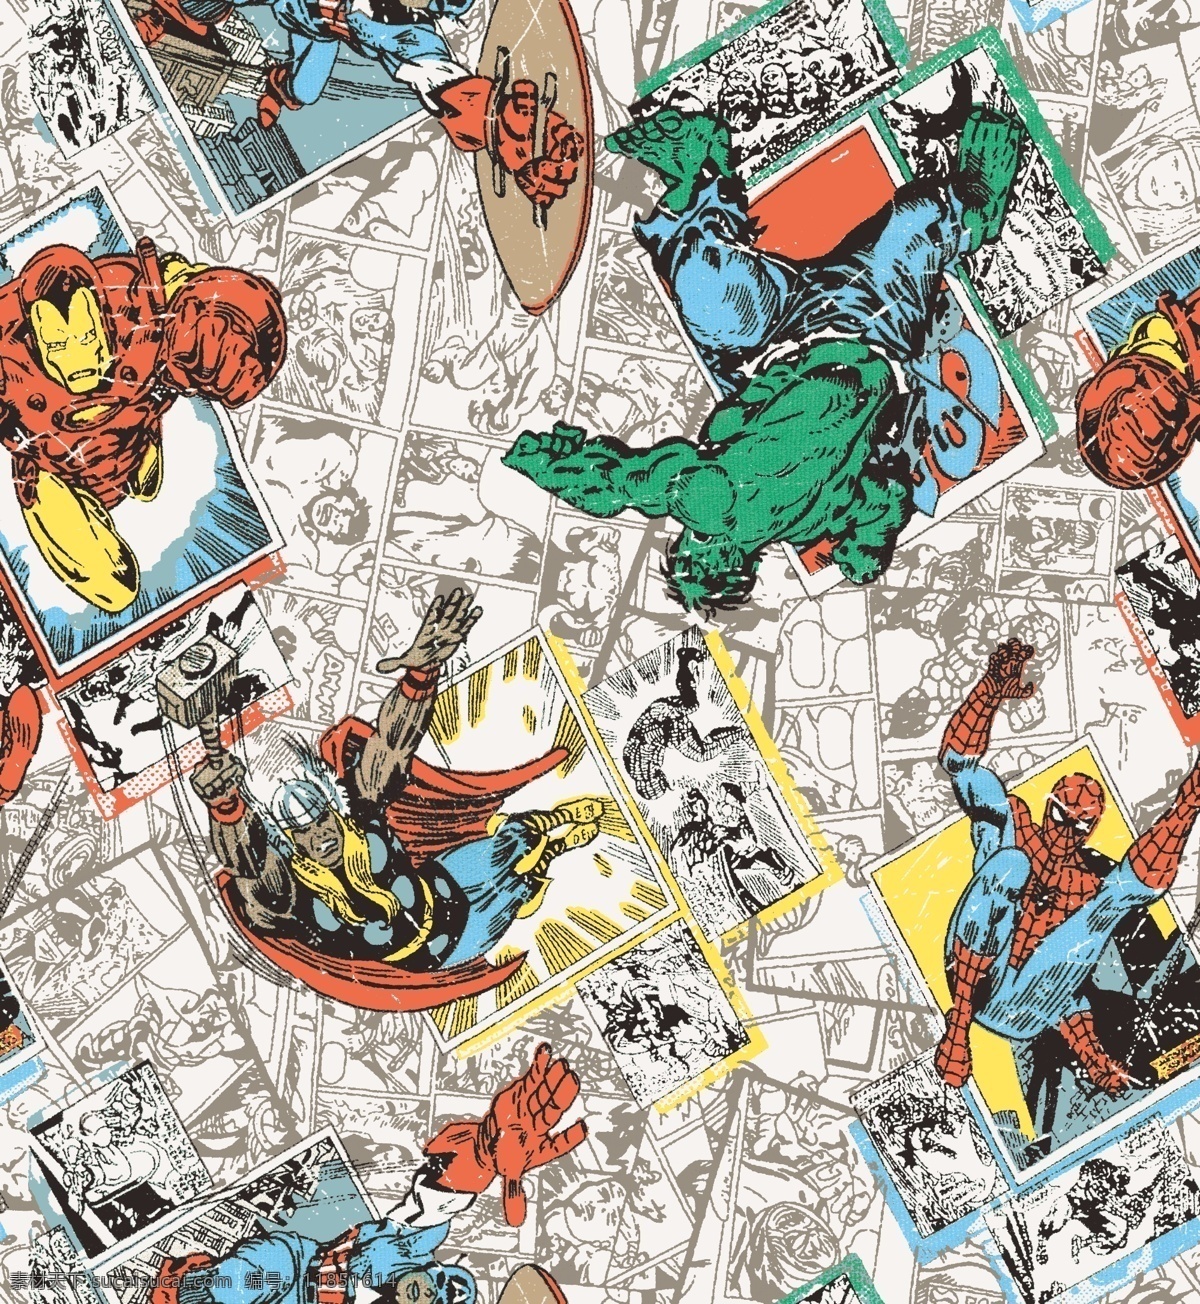 漫 威 电影 宇宙 超级 英雄 蜘蛛侠 漫威 人物 动漫 复仇者联盟 建筑 四方连续 布艺 印花 数码 动漫动画 包装设计